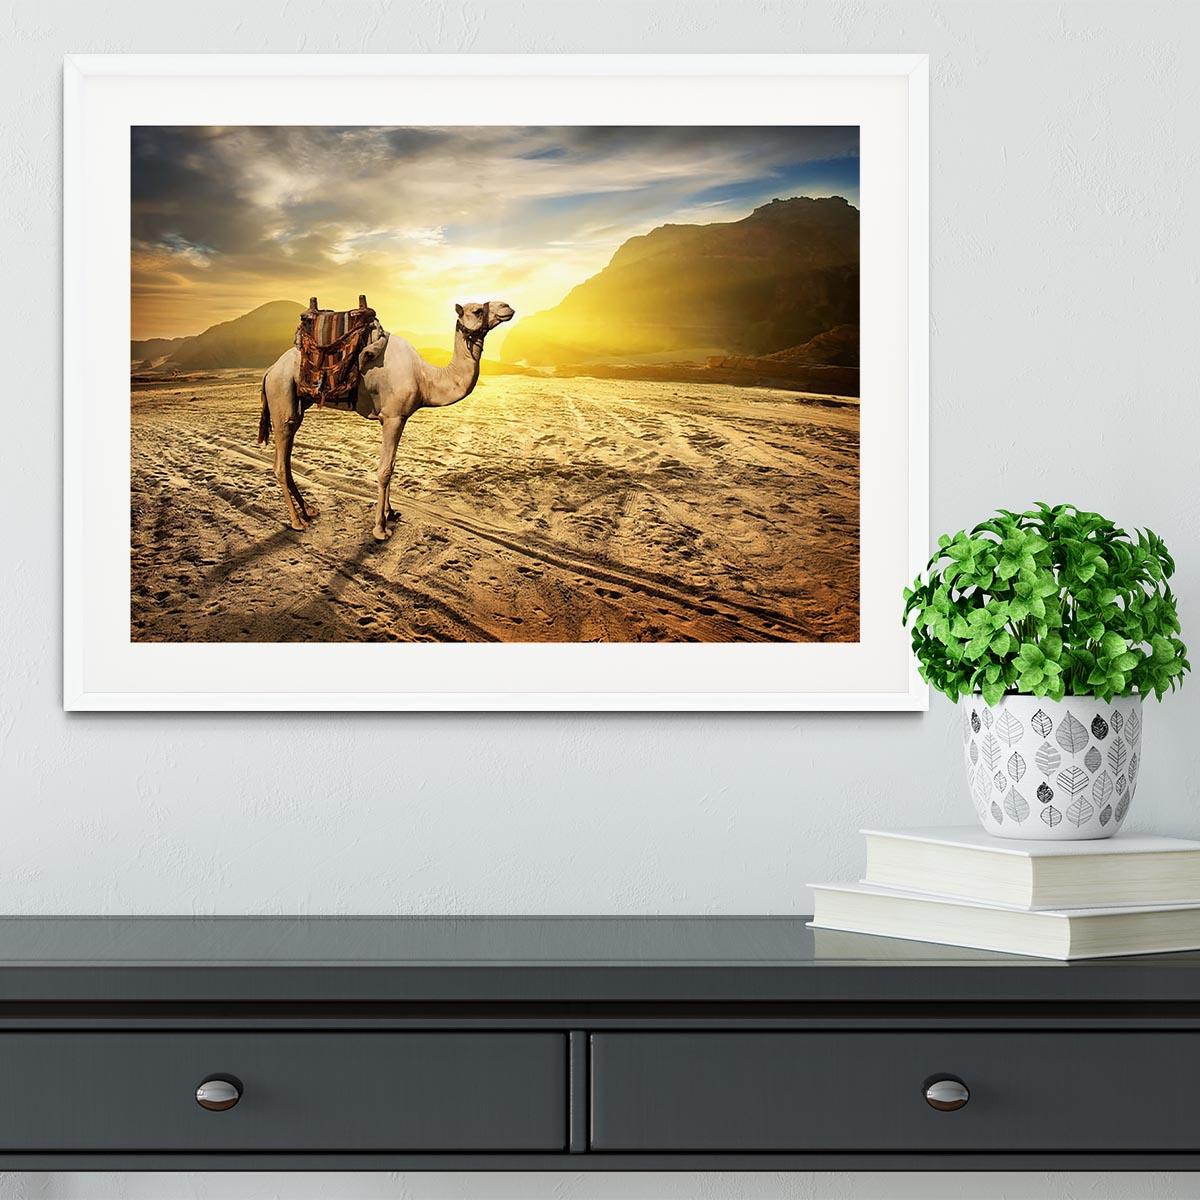 Camel in sandy desert near mountains at sunset Framed Print - Canvas Art Rocks - 5